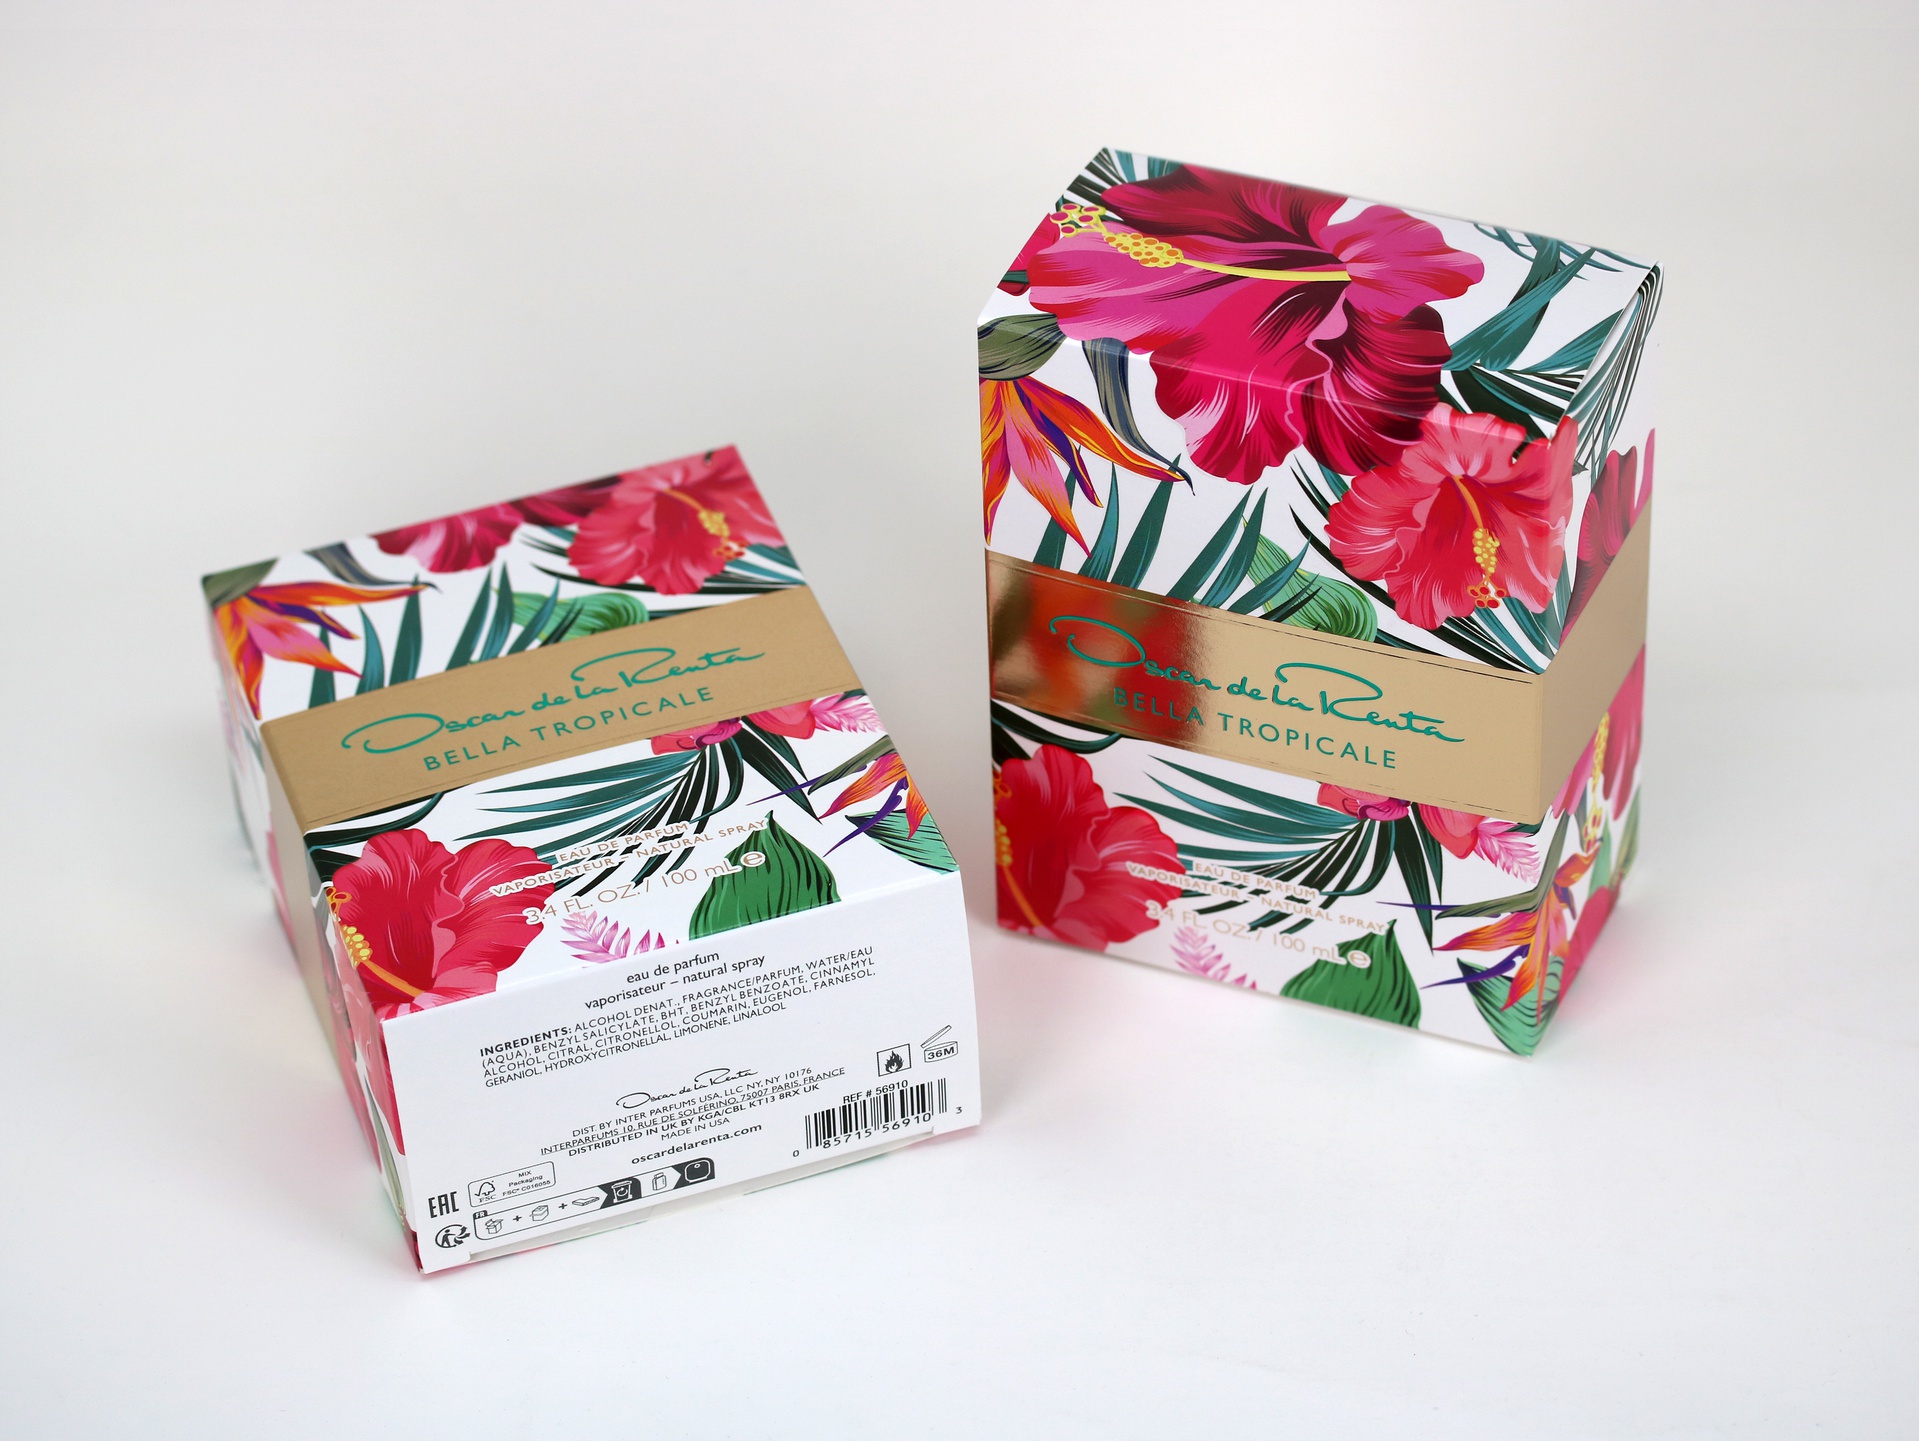 Oscar de la Renta Bella Tropicale folding carton